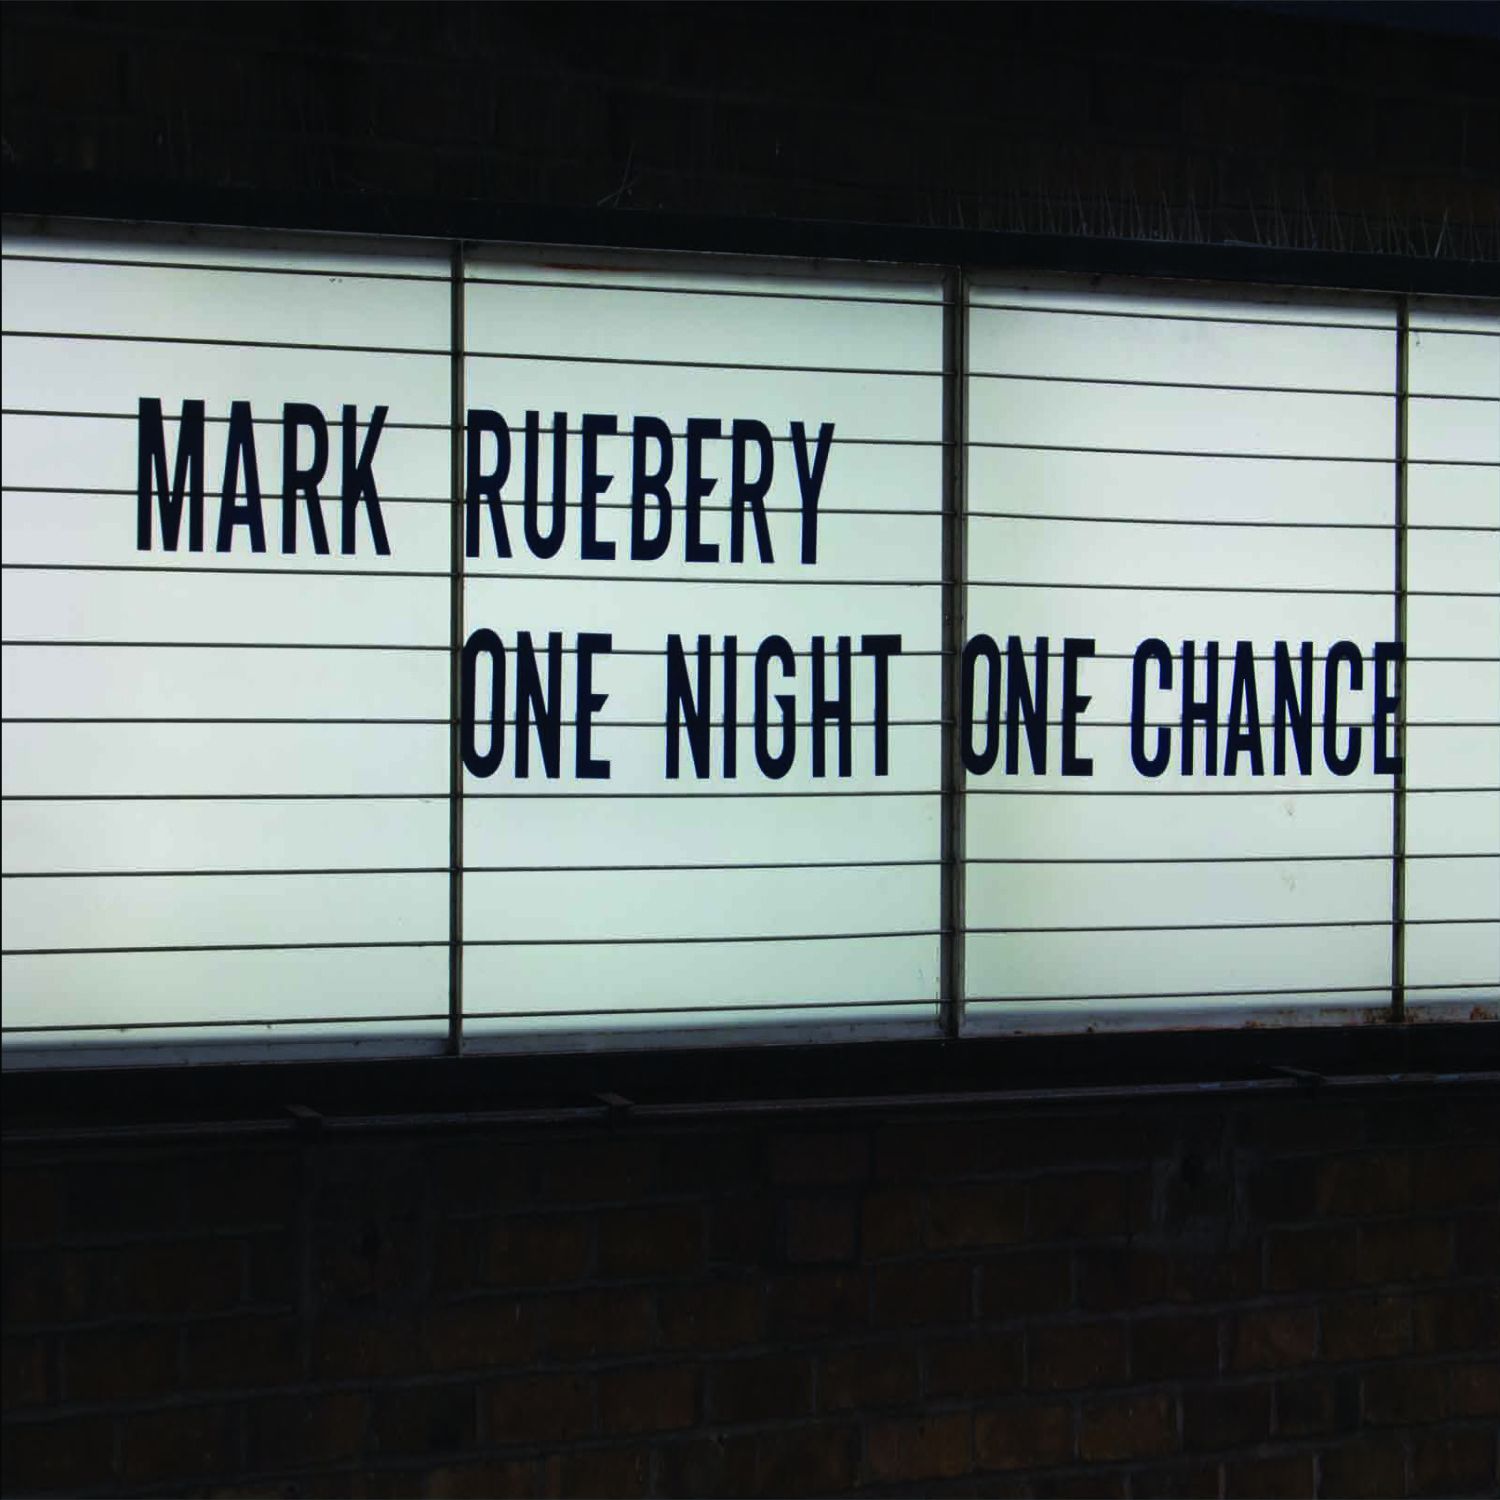 Mark Ruebery